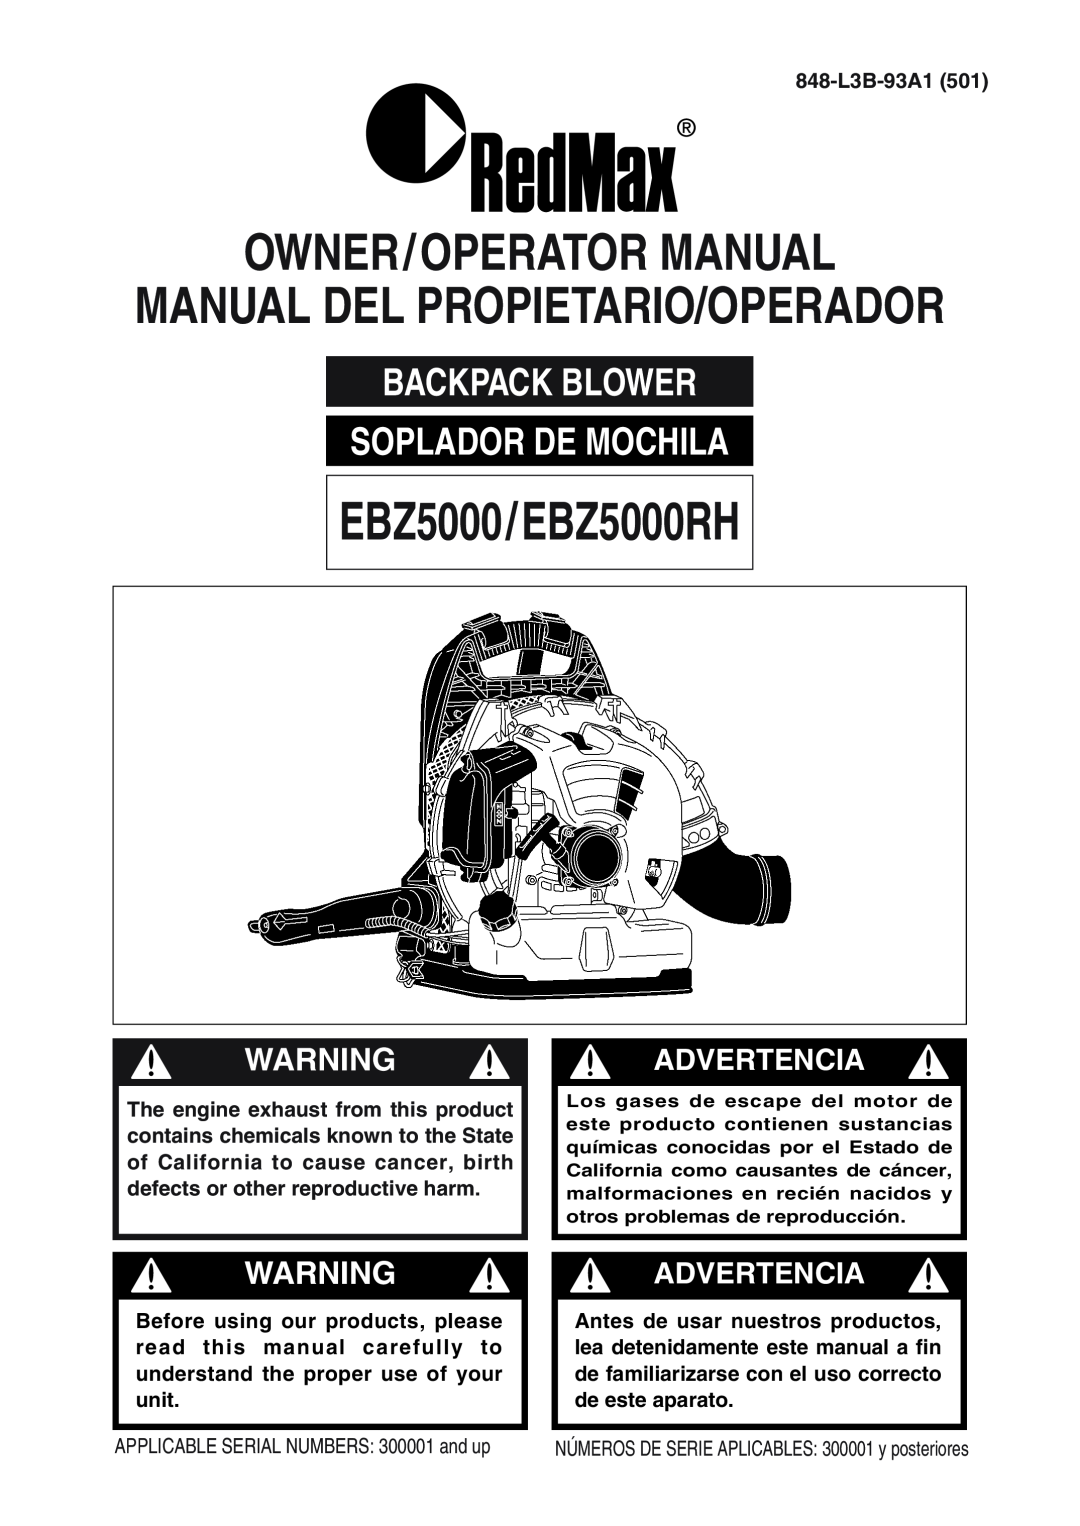 RedMax manual EBZ5000/EBZ5000RH, Owner/Operator Manual, Backpack Blower Soplador De Mochila, 848-L3B-93A1501 